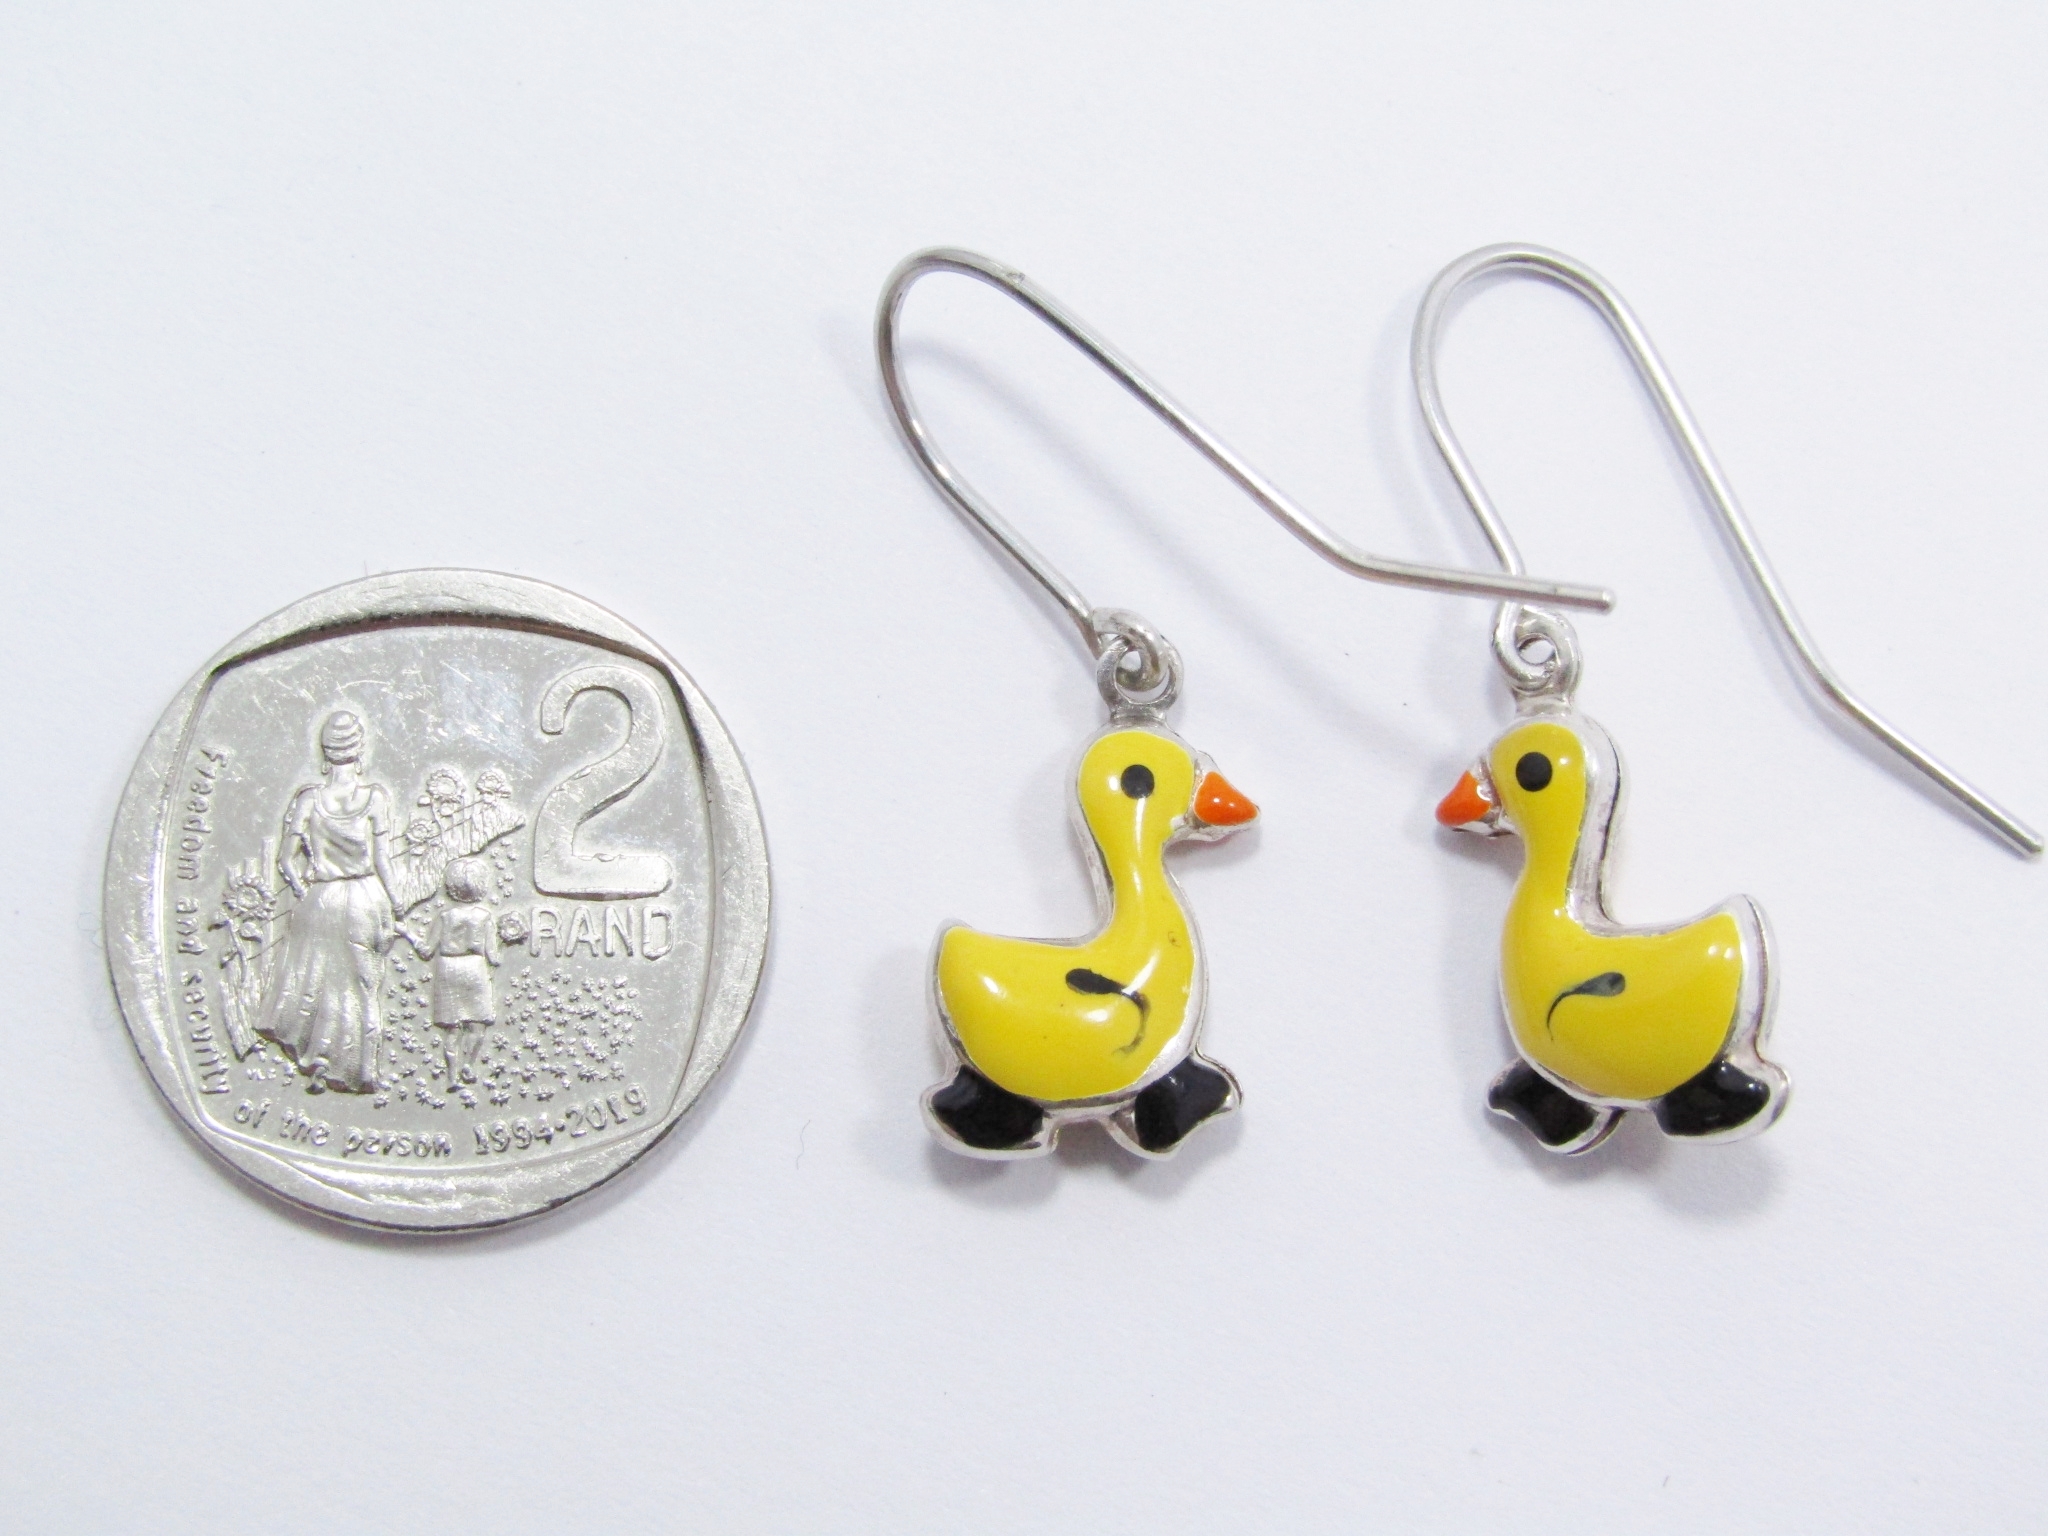 A Lovely pair of Enamel Duck Dangling Earrings in Sterling Silver.